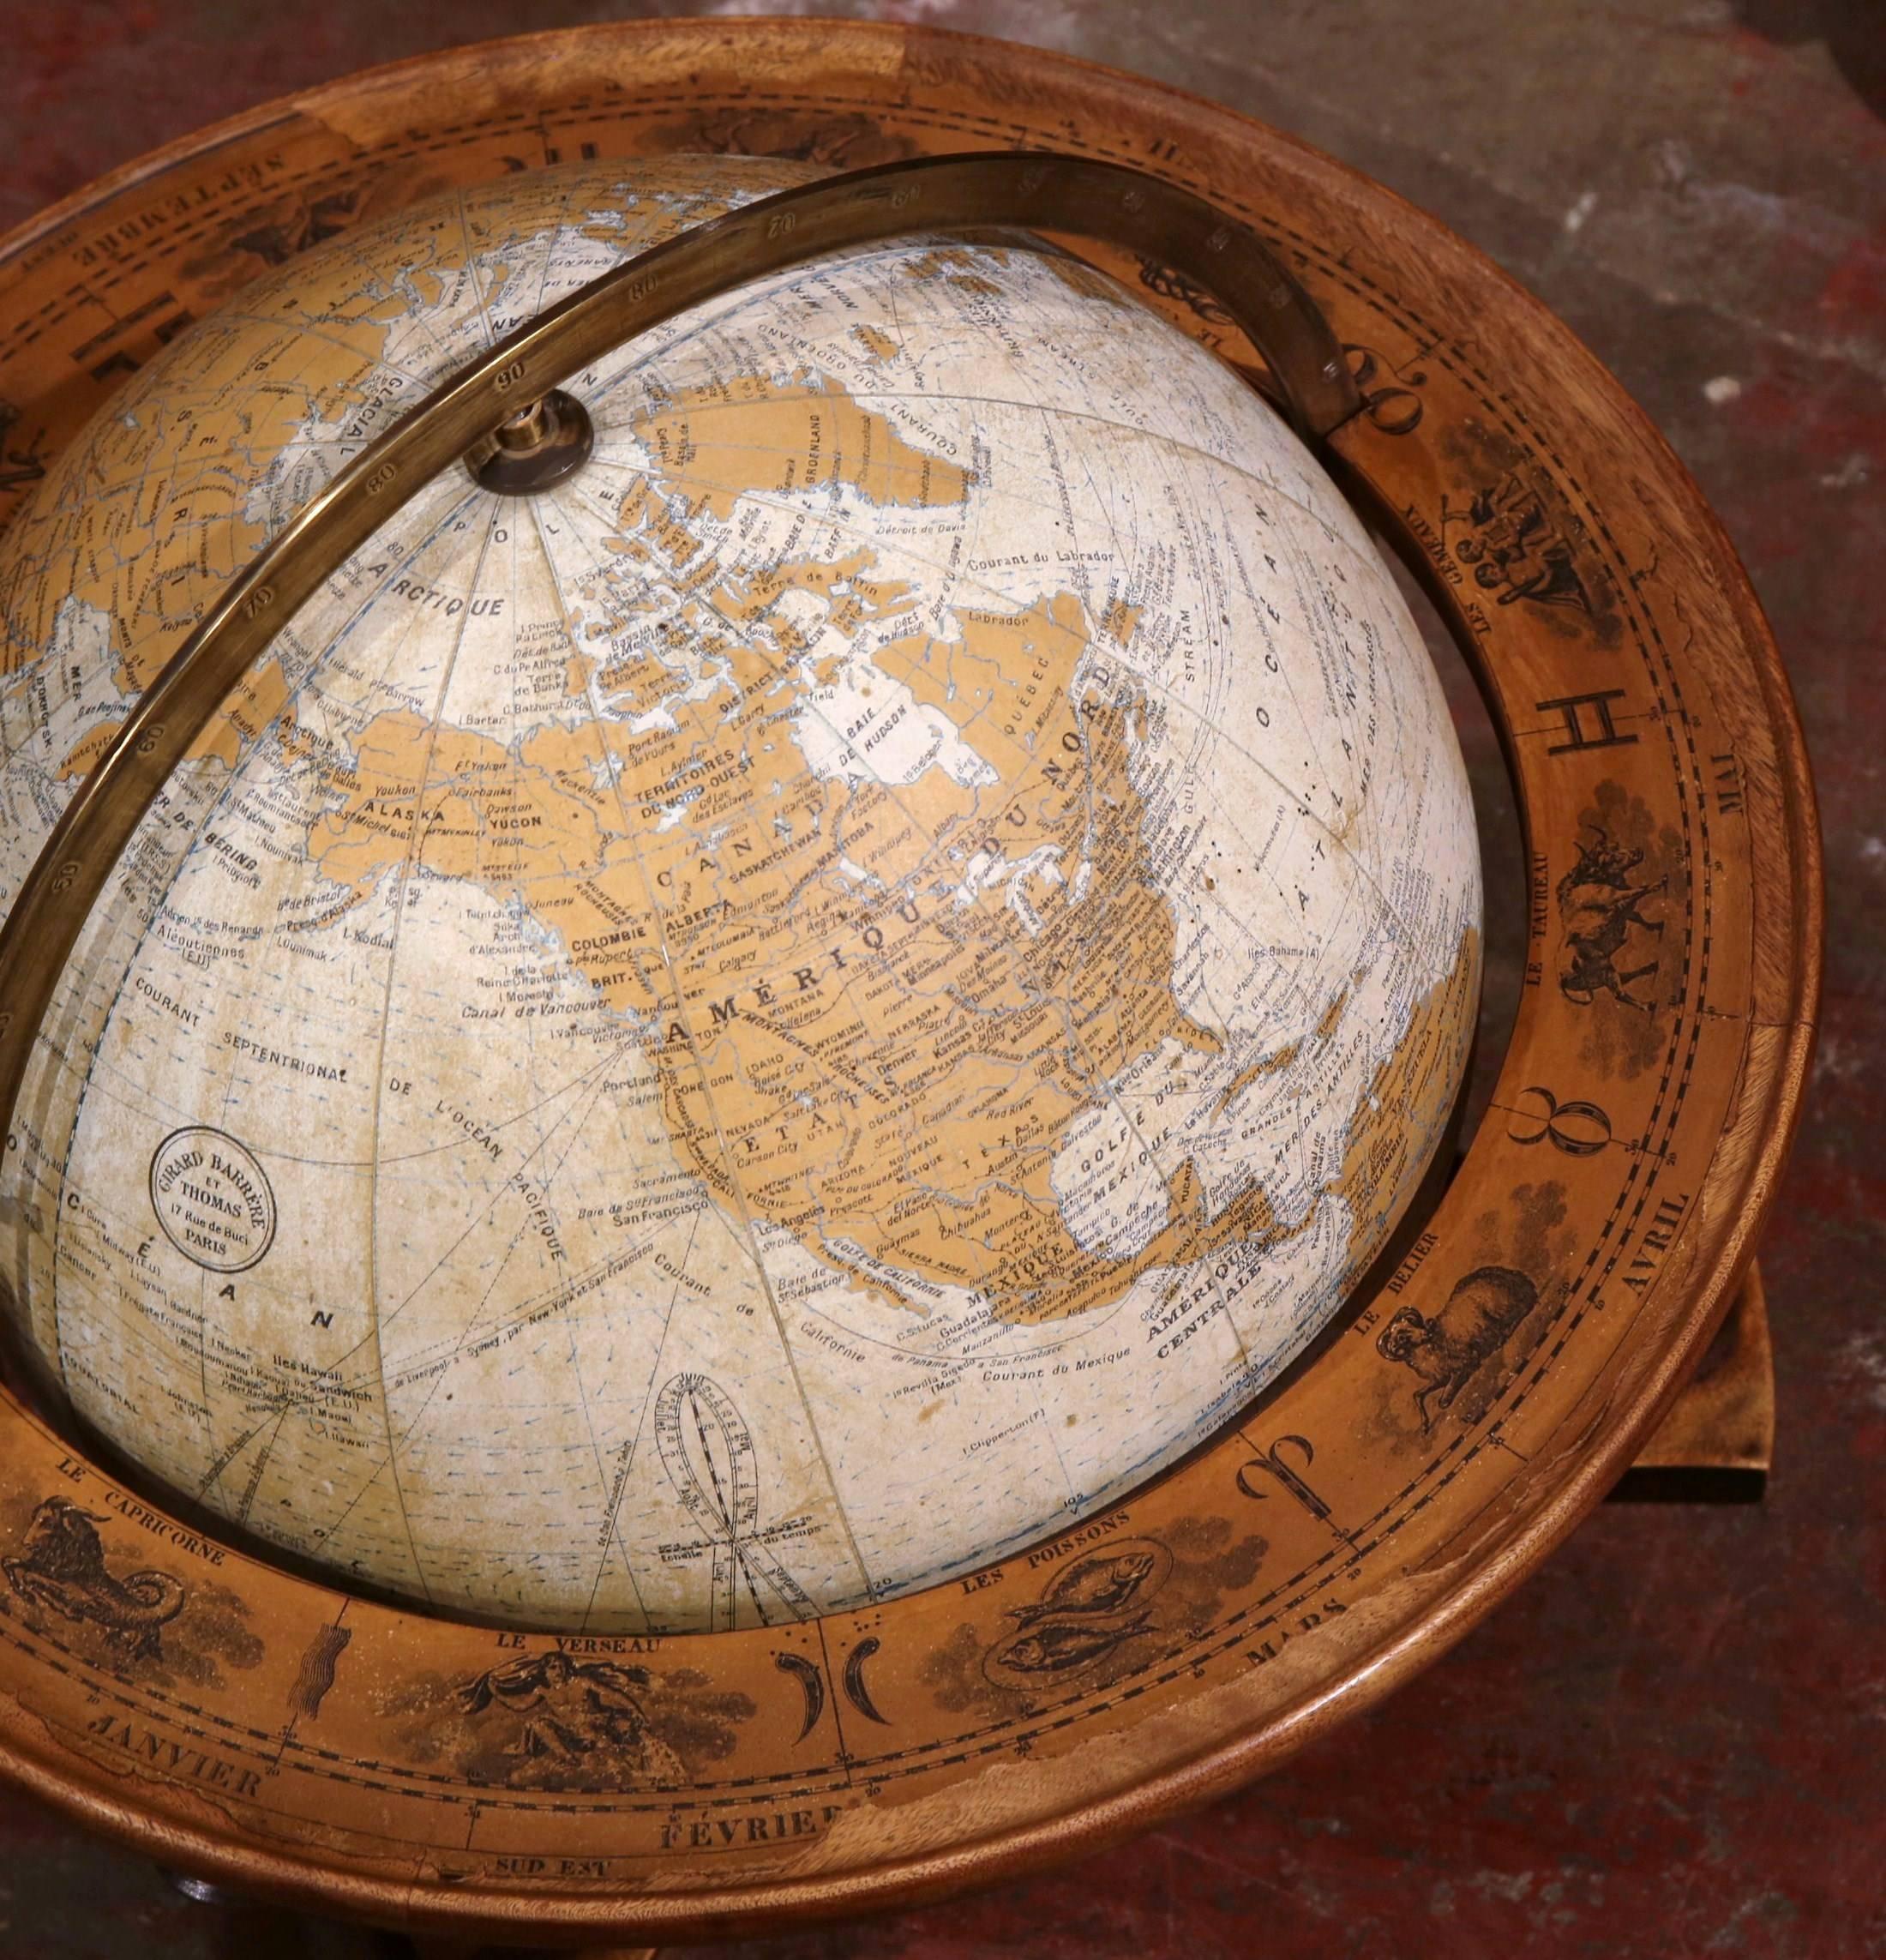 20th Century French Globe on Walnut Base Signed Girard Barrere et Thomas, Paris 1